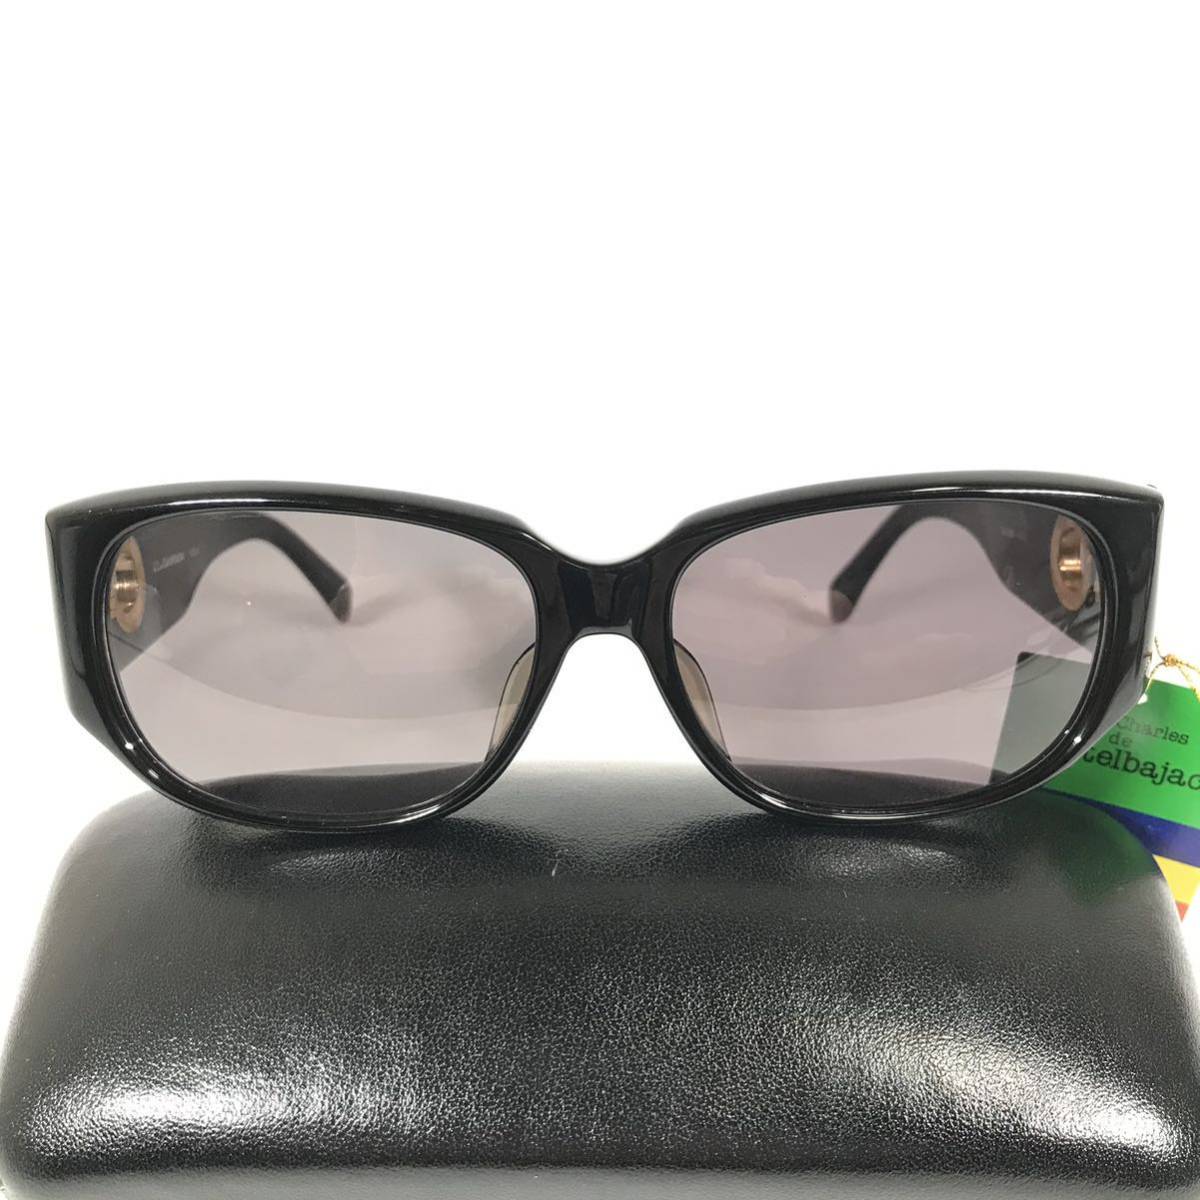  не использовался товар [ Castelbajac ] подлинный товар Castelbajac солнцезащитные очки Logo металлические принадлежности 9004 серый × чёрный цвет серия мужской женский обычная цена 2.8 десять тысяч иен стоимость доставки 520 иен 5